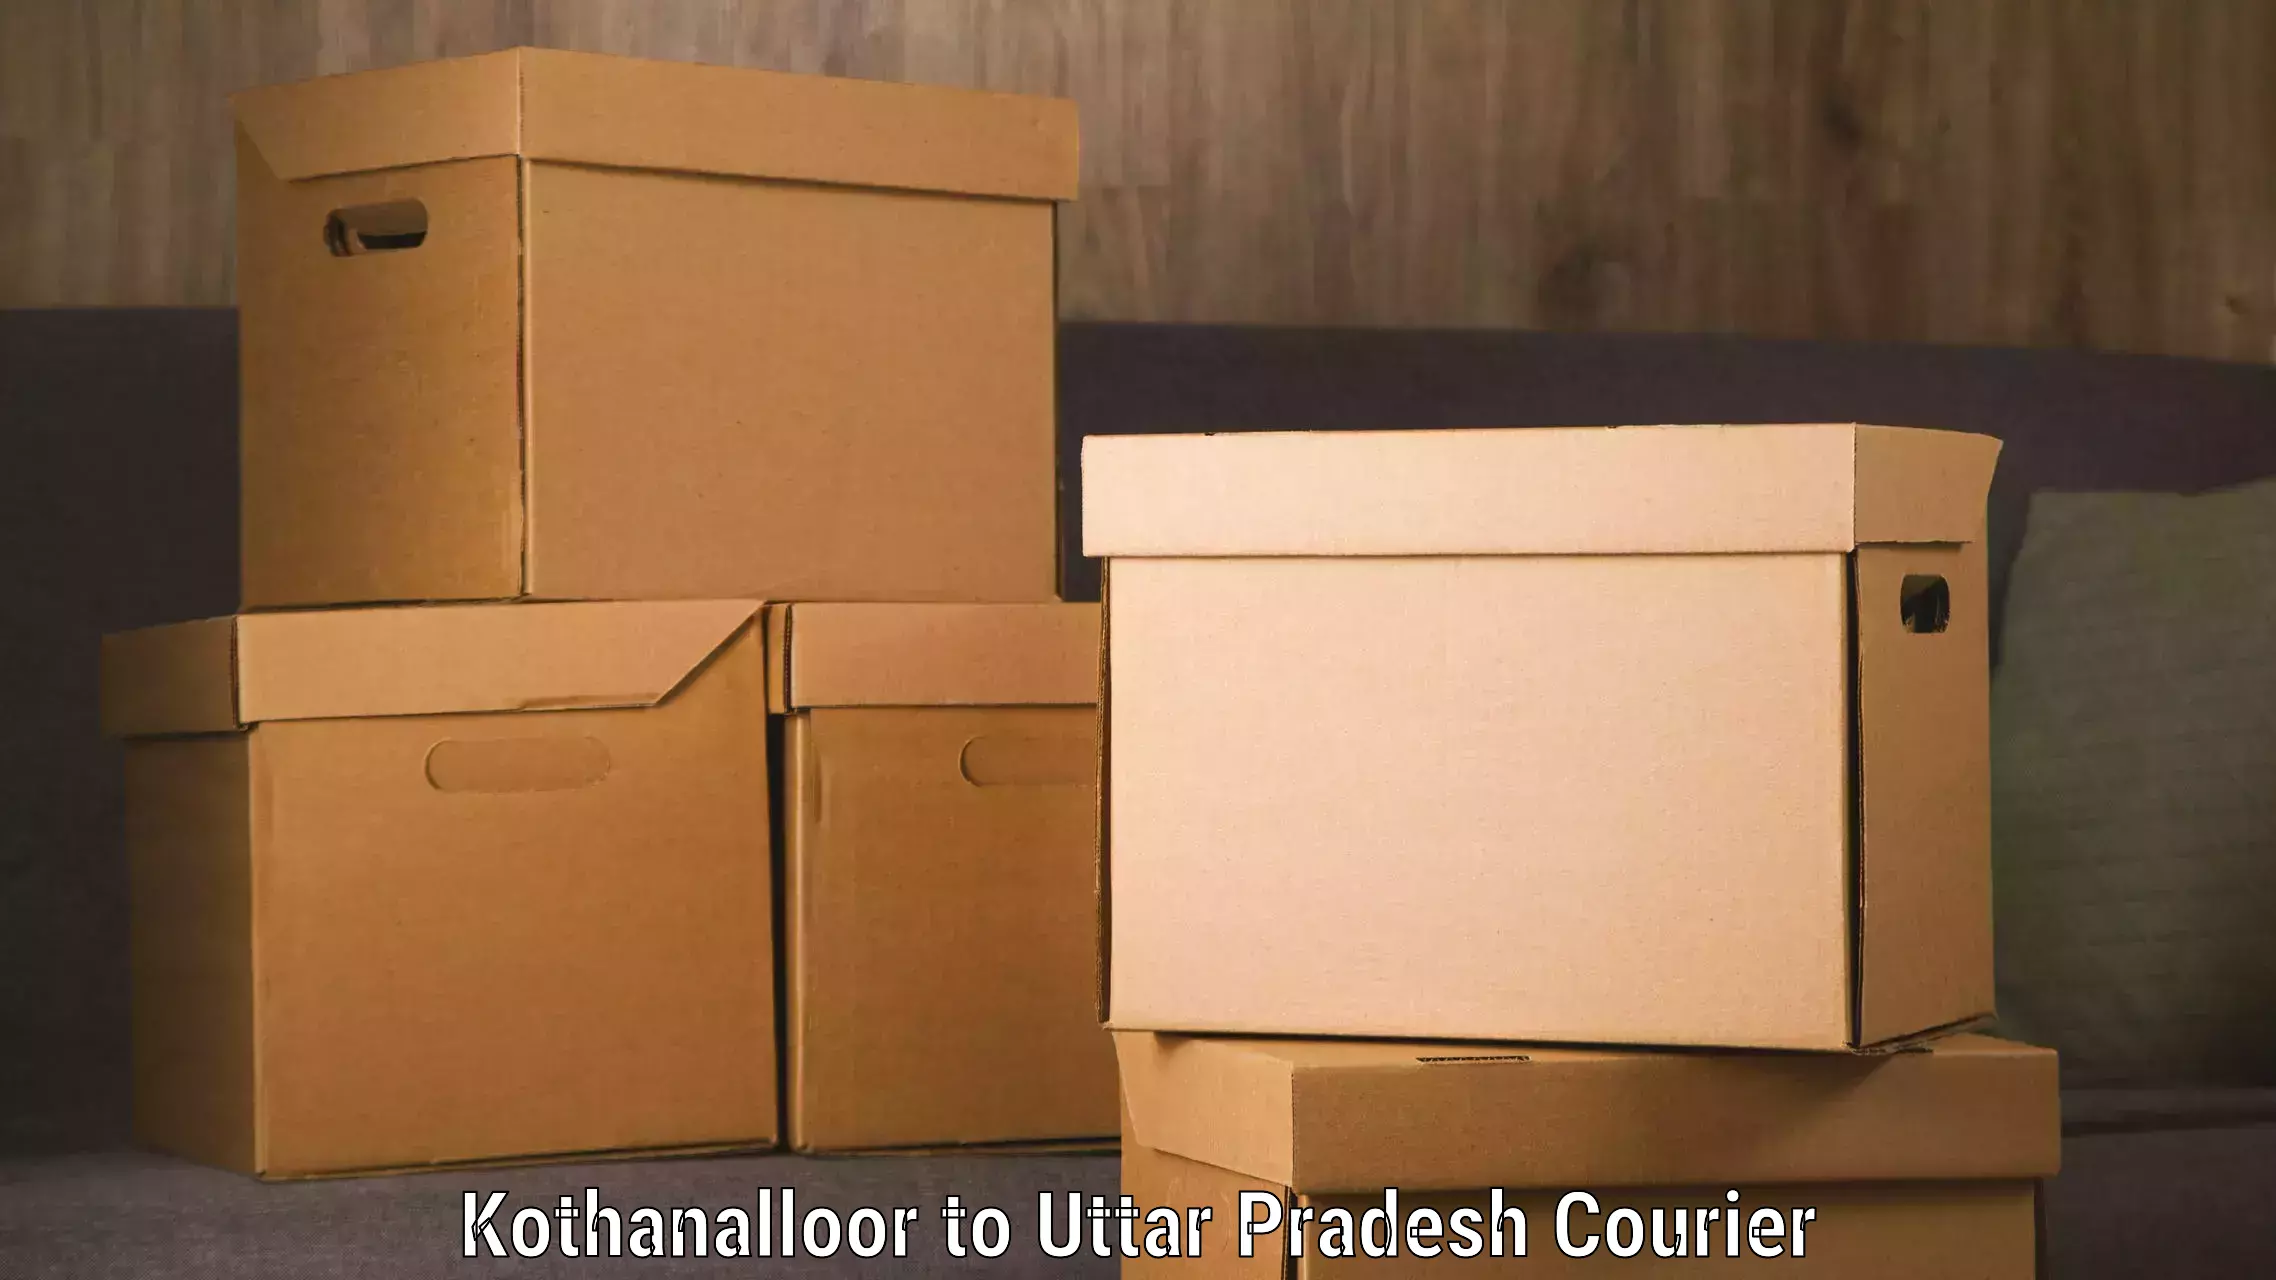 Sustainable shipping practices in Kothanalloor to Uttar Pradesh